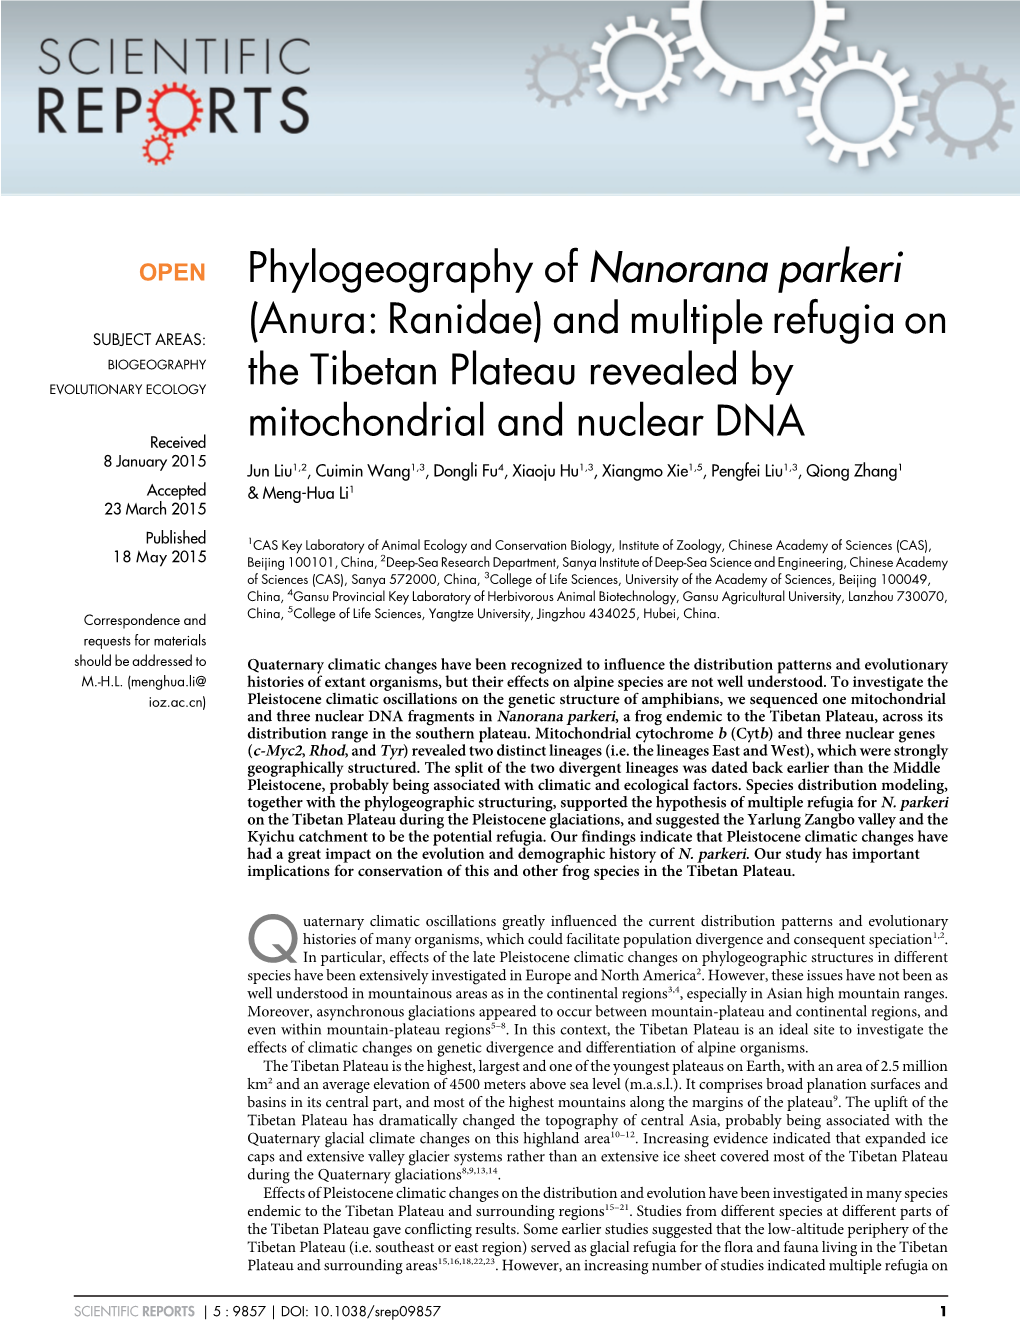 Phylogeography of Nanorana Parkeri